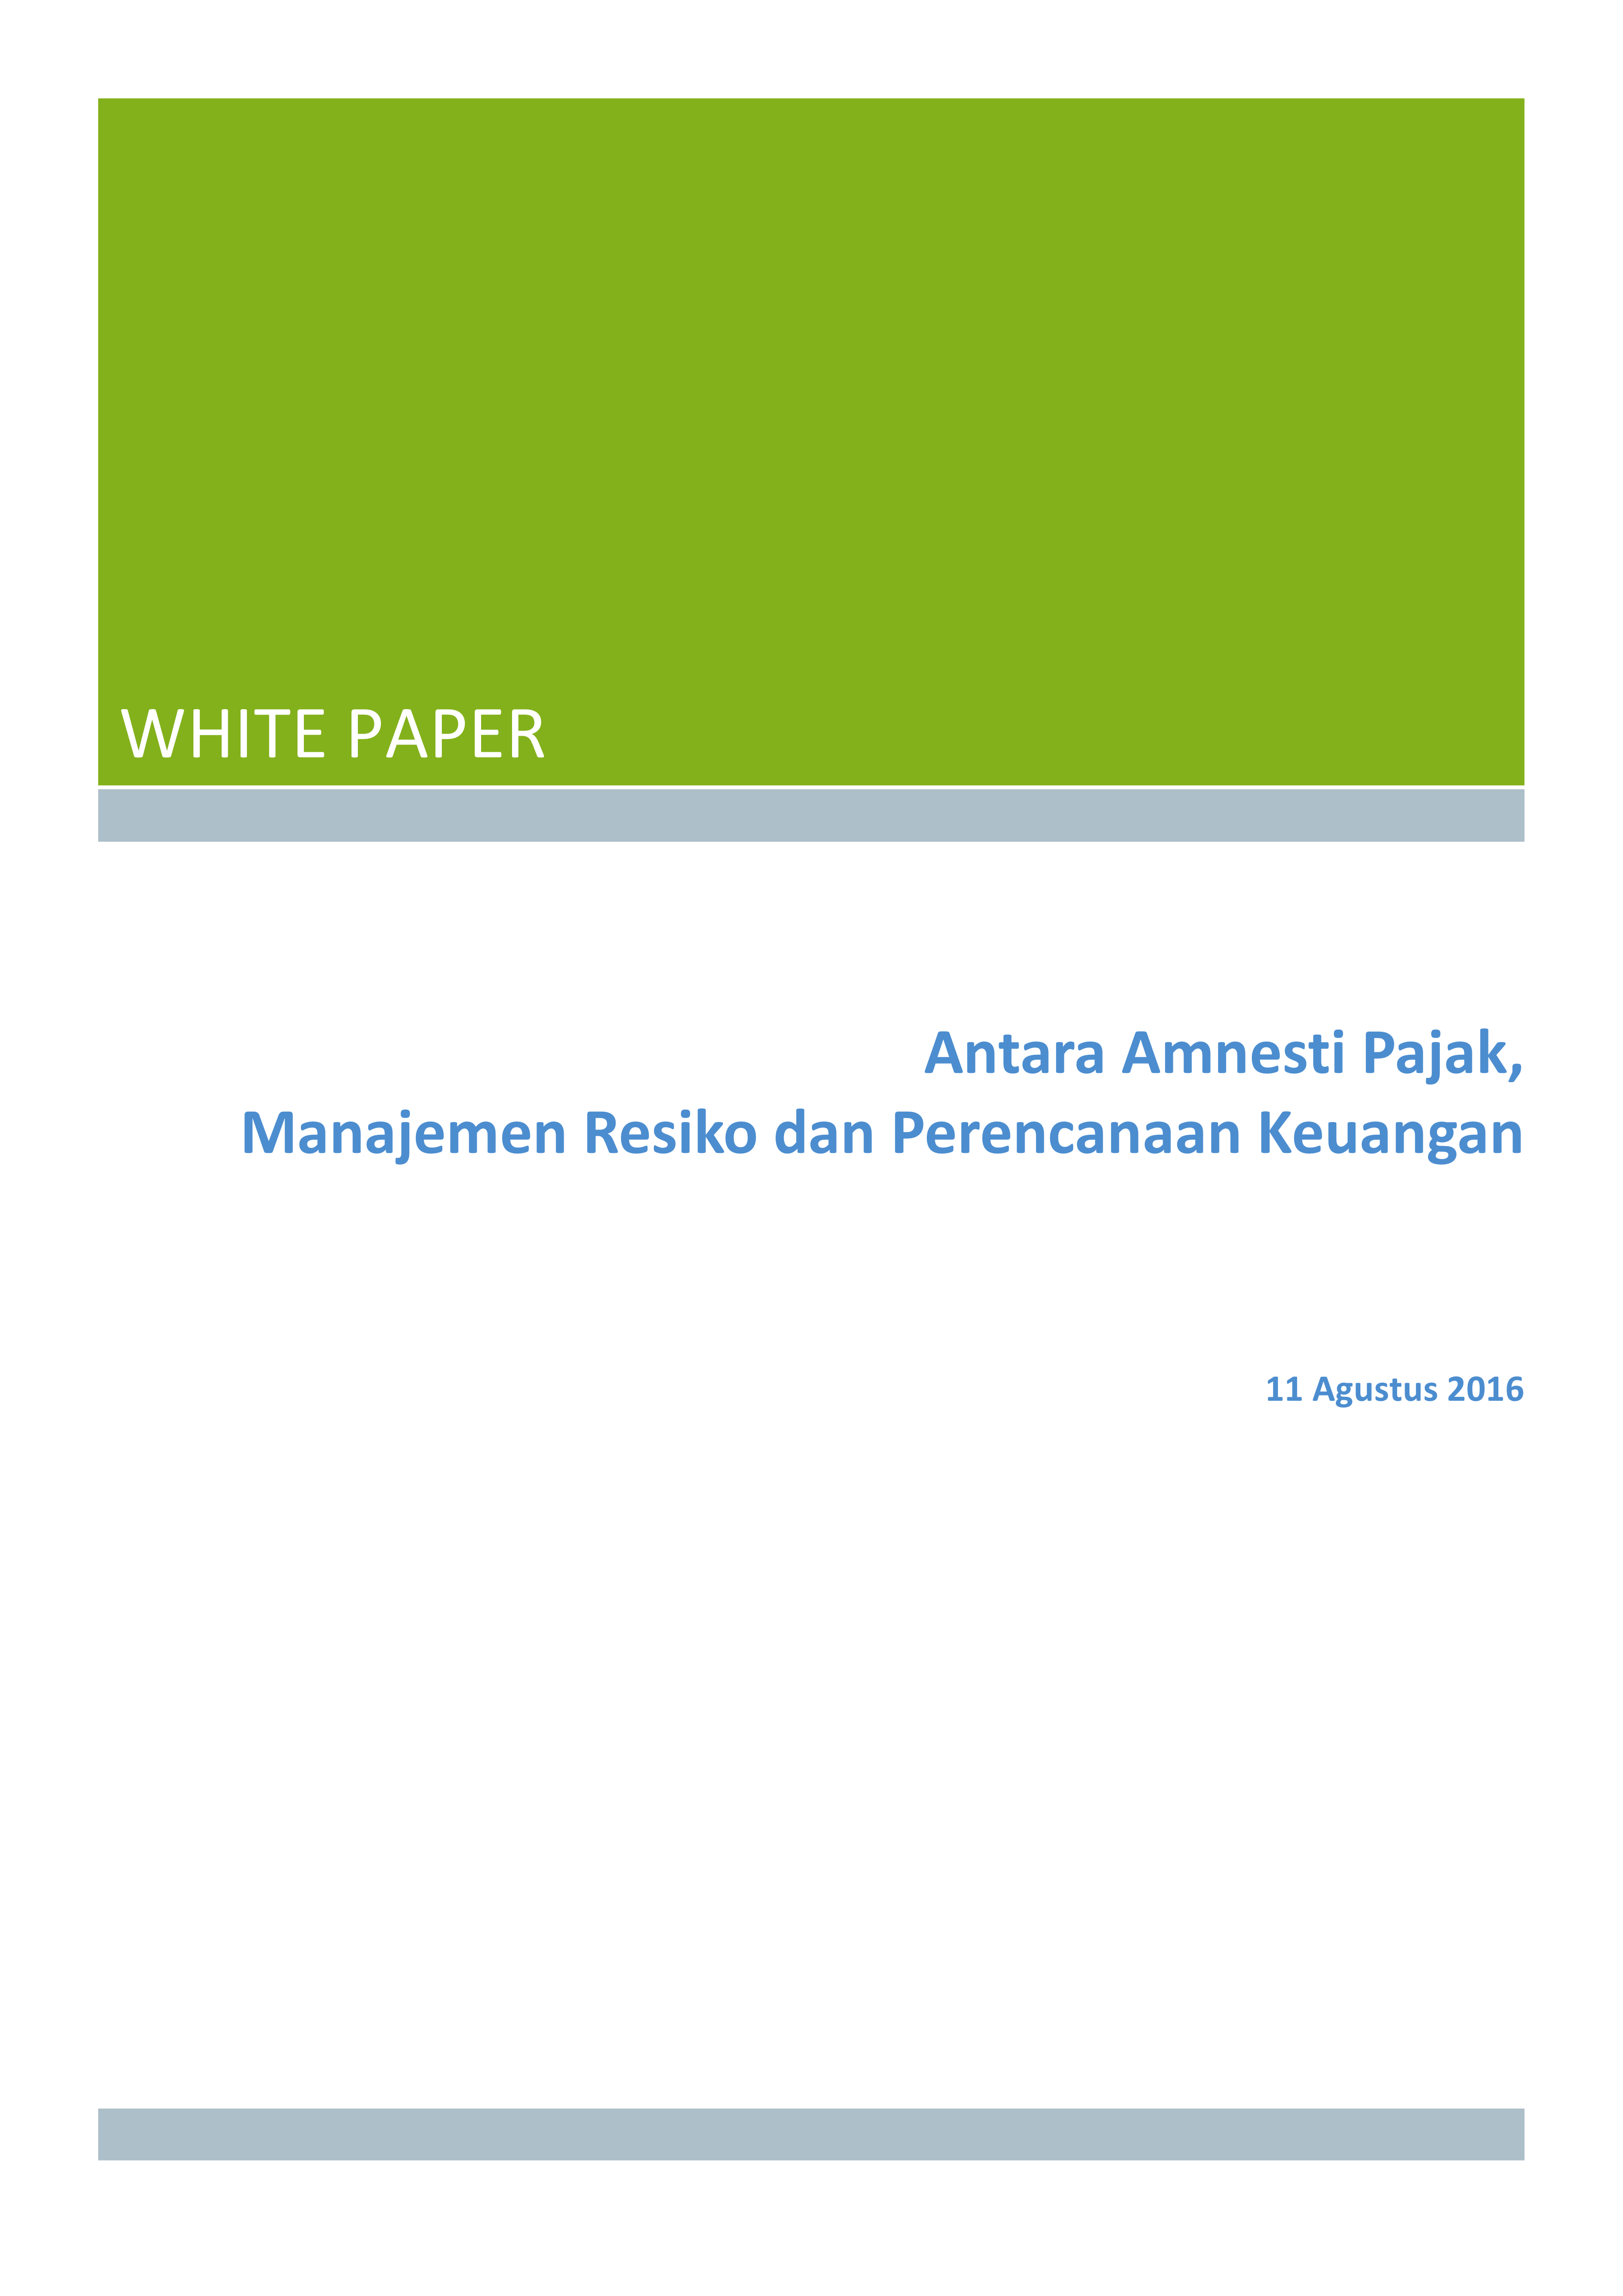 White Paper: Antara Amnesti Pajak, Manajemen Resiko dan Perencanaan Keuangan